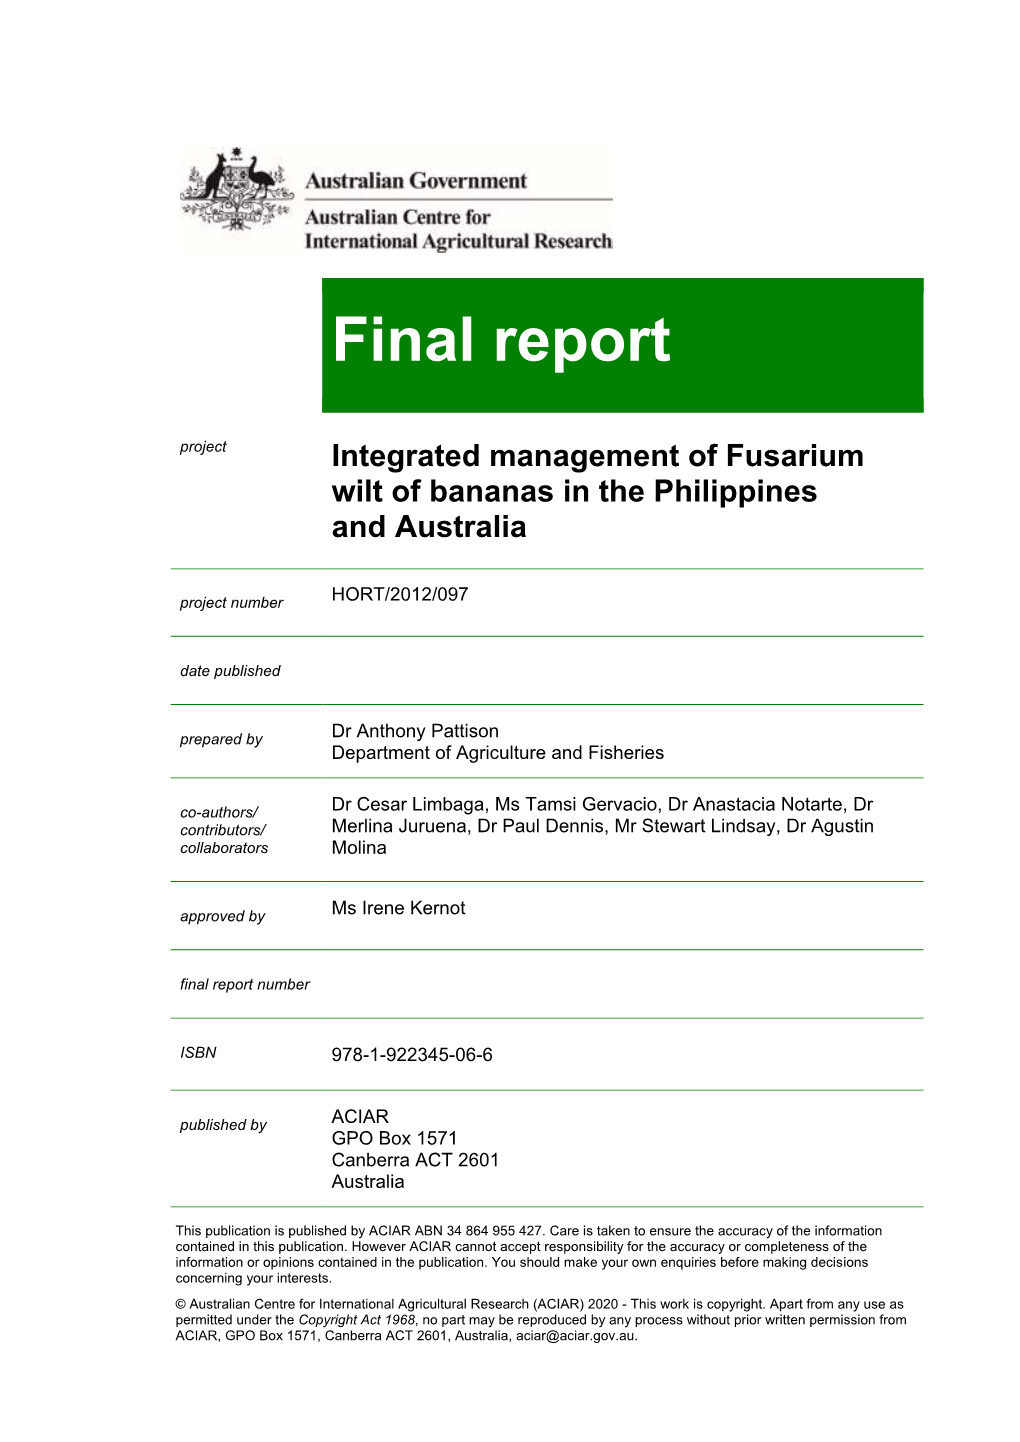 Integrated Management of Fusarium Wilt of Bananas in the Philippines and Australia